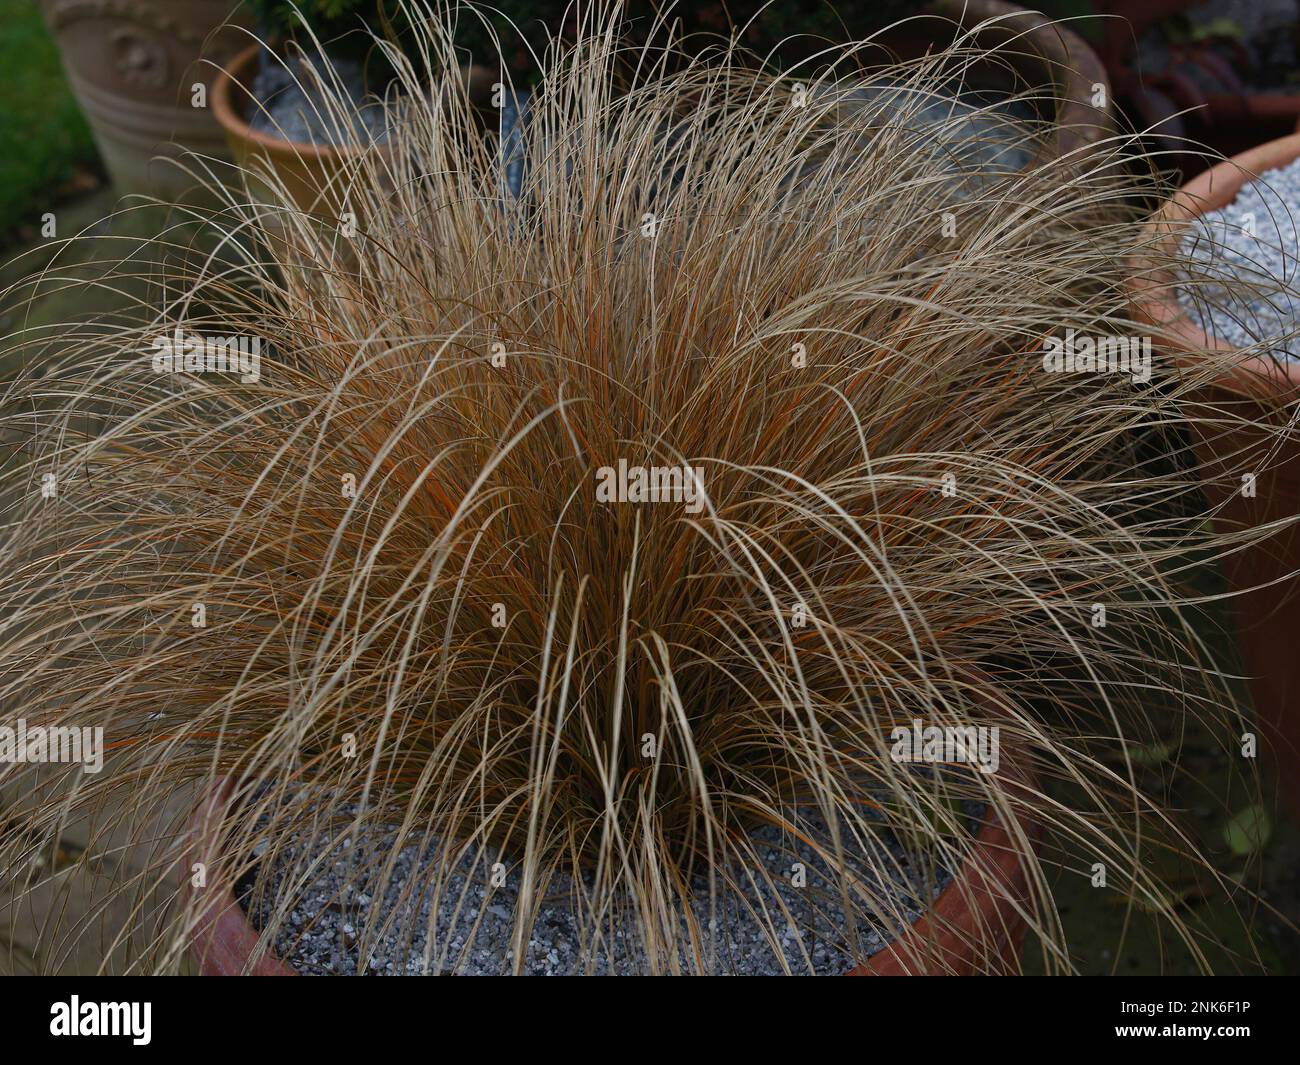 Verengung von langem, bogenförmigem Stroh wie Blätter des Ziergrases Carex festucacea oder Schwingelkeil. Stockfoto